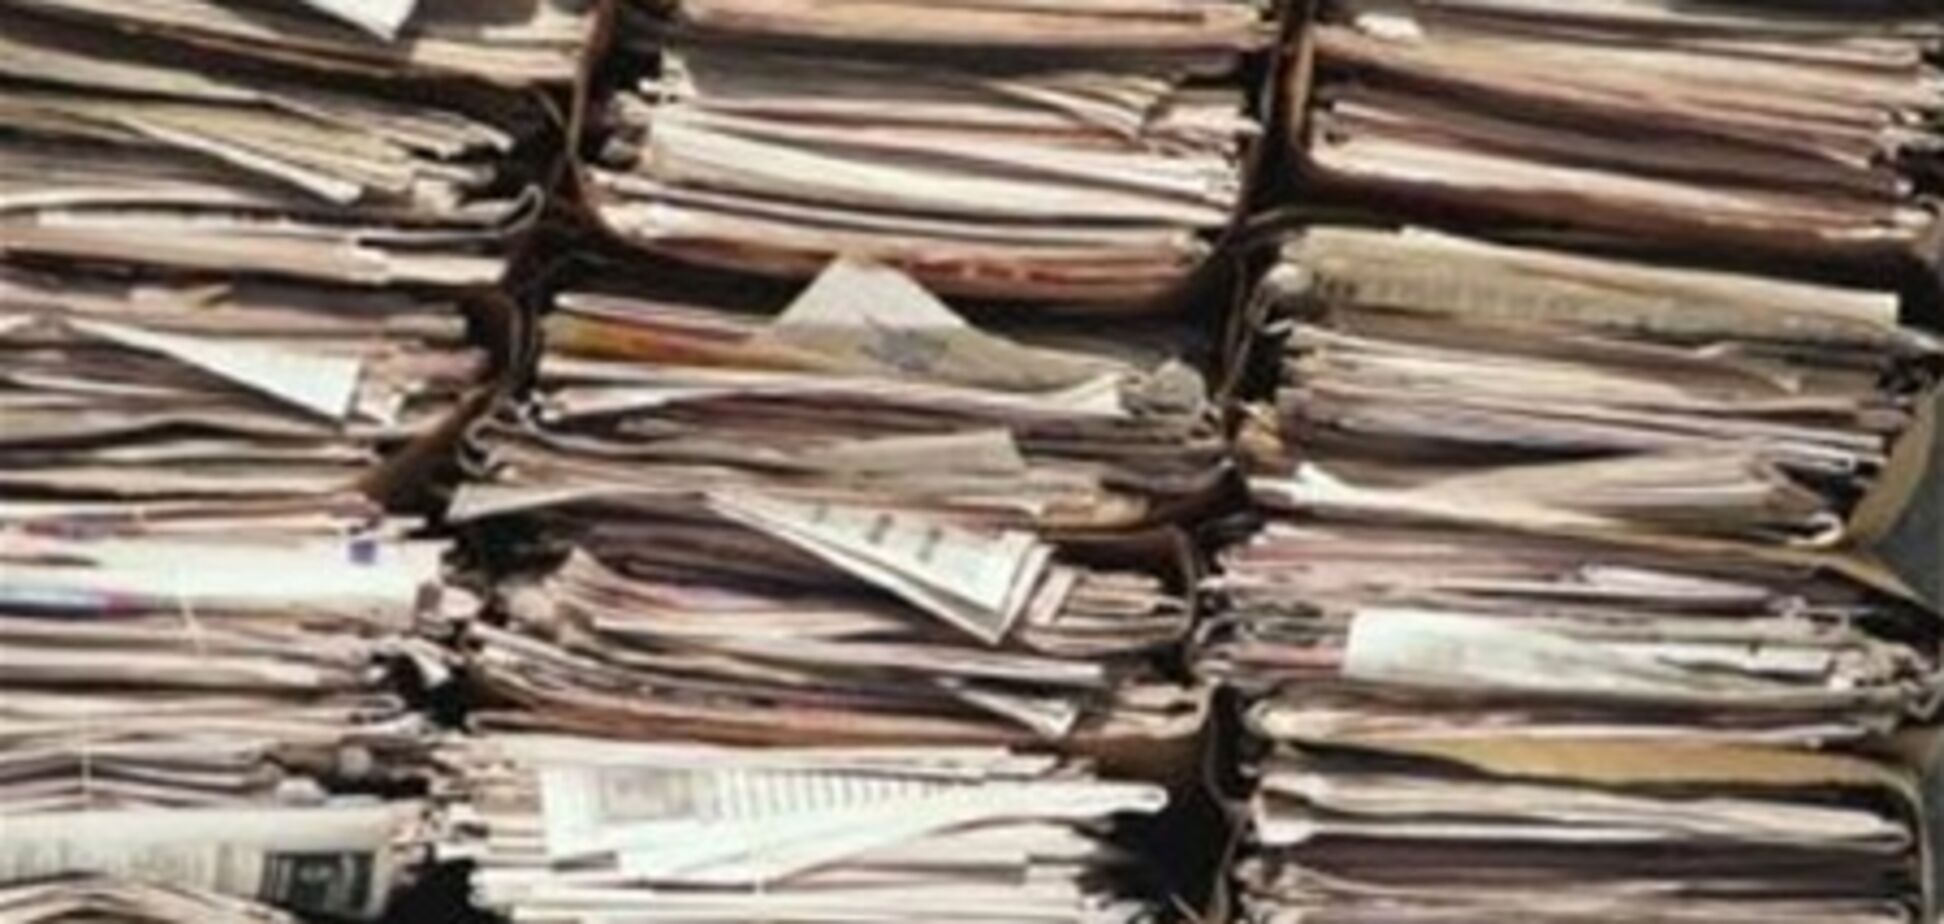 Укрзализныця полностью откажется от бумажного документооборота в грузовых перевозках